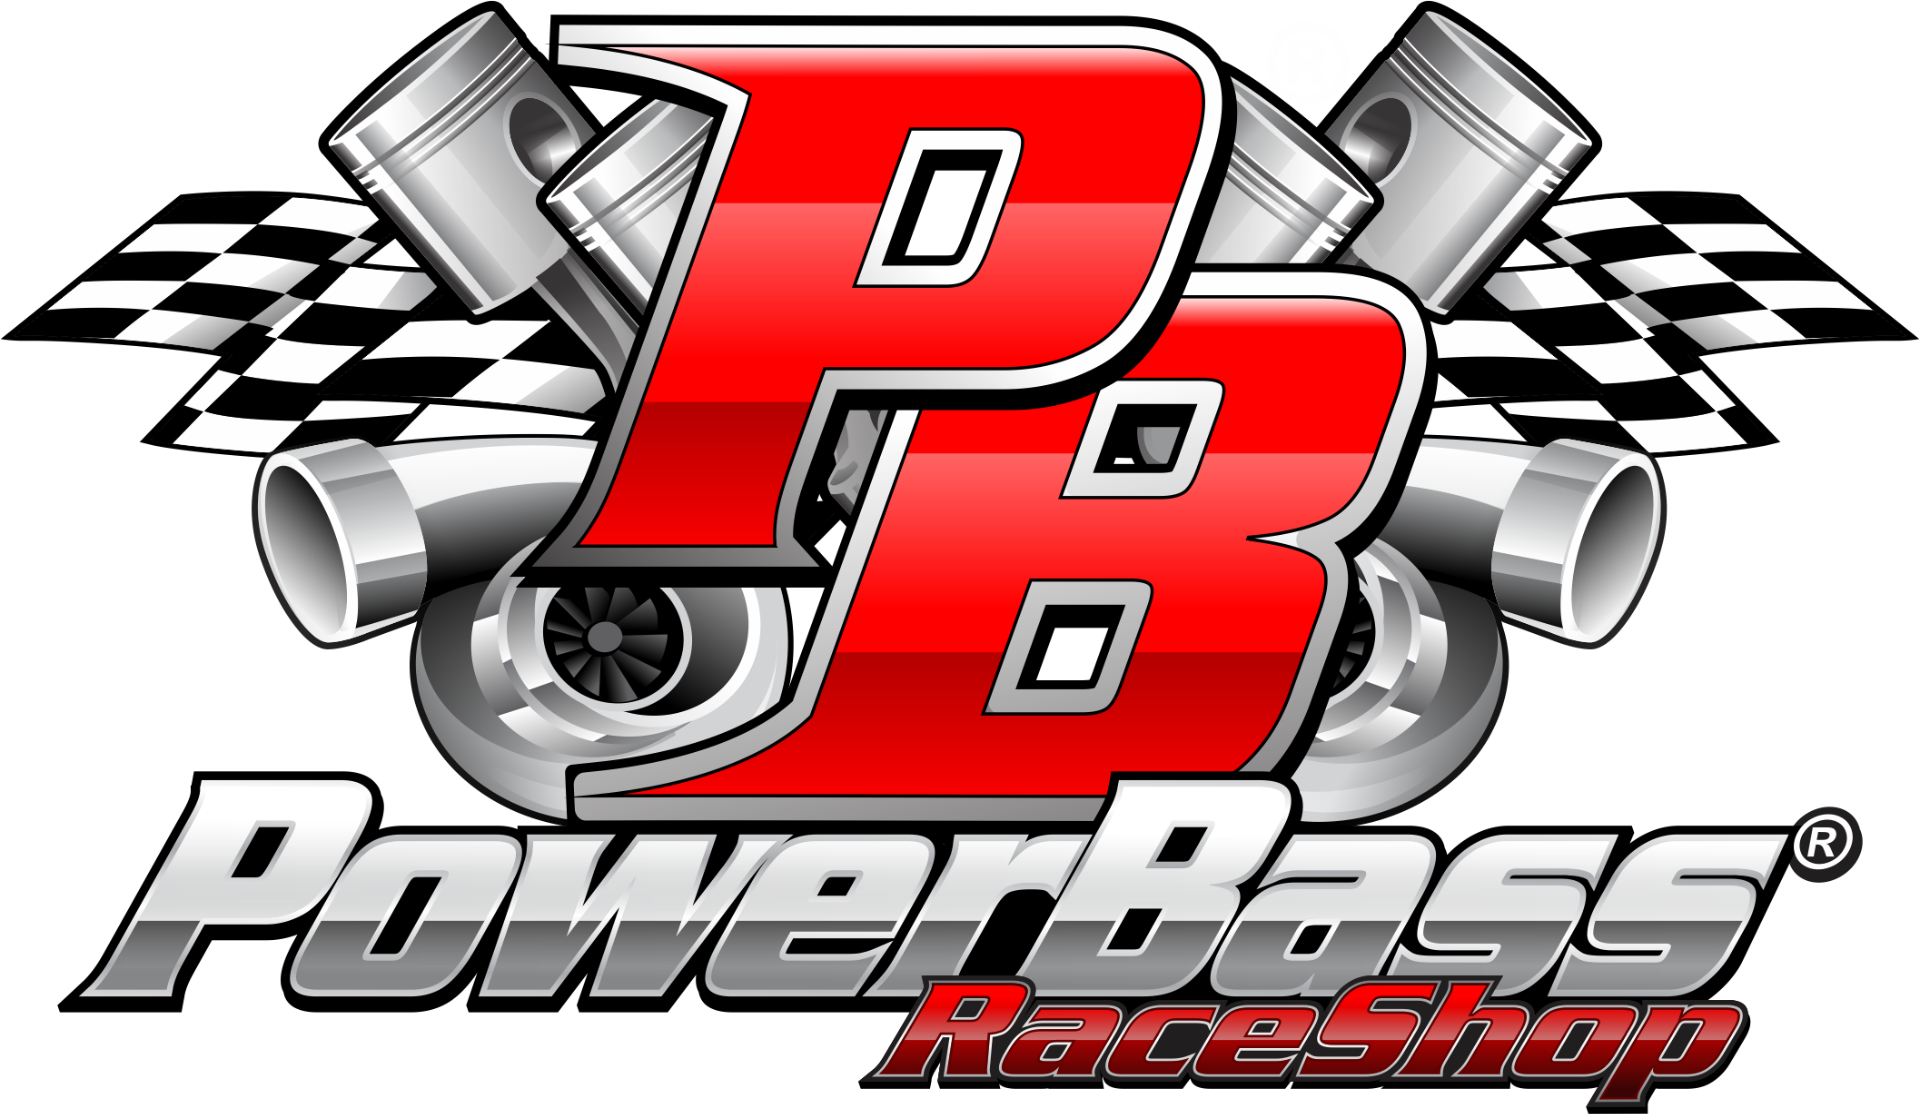 PB POWER BASS RACE SHOP